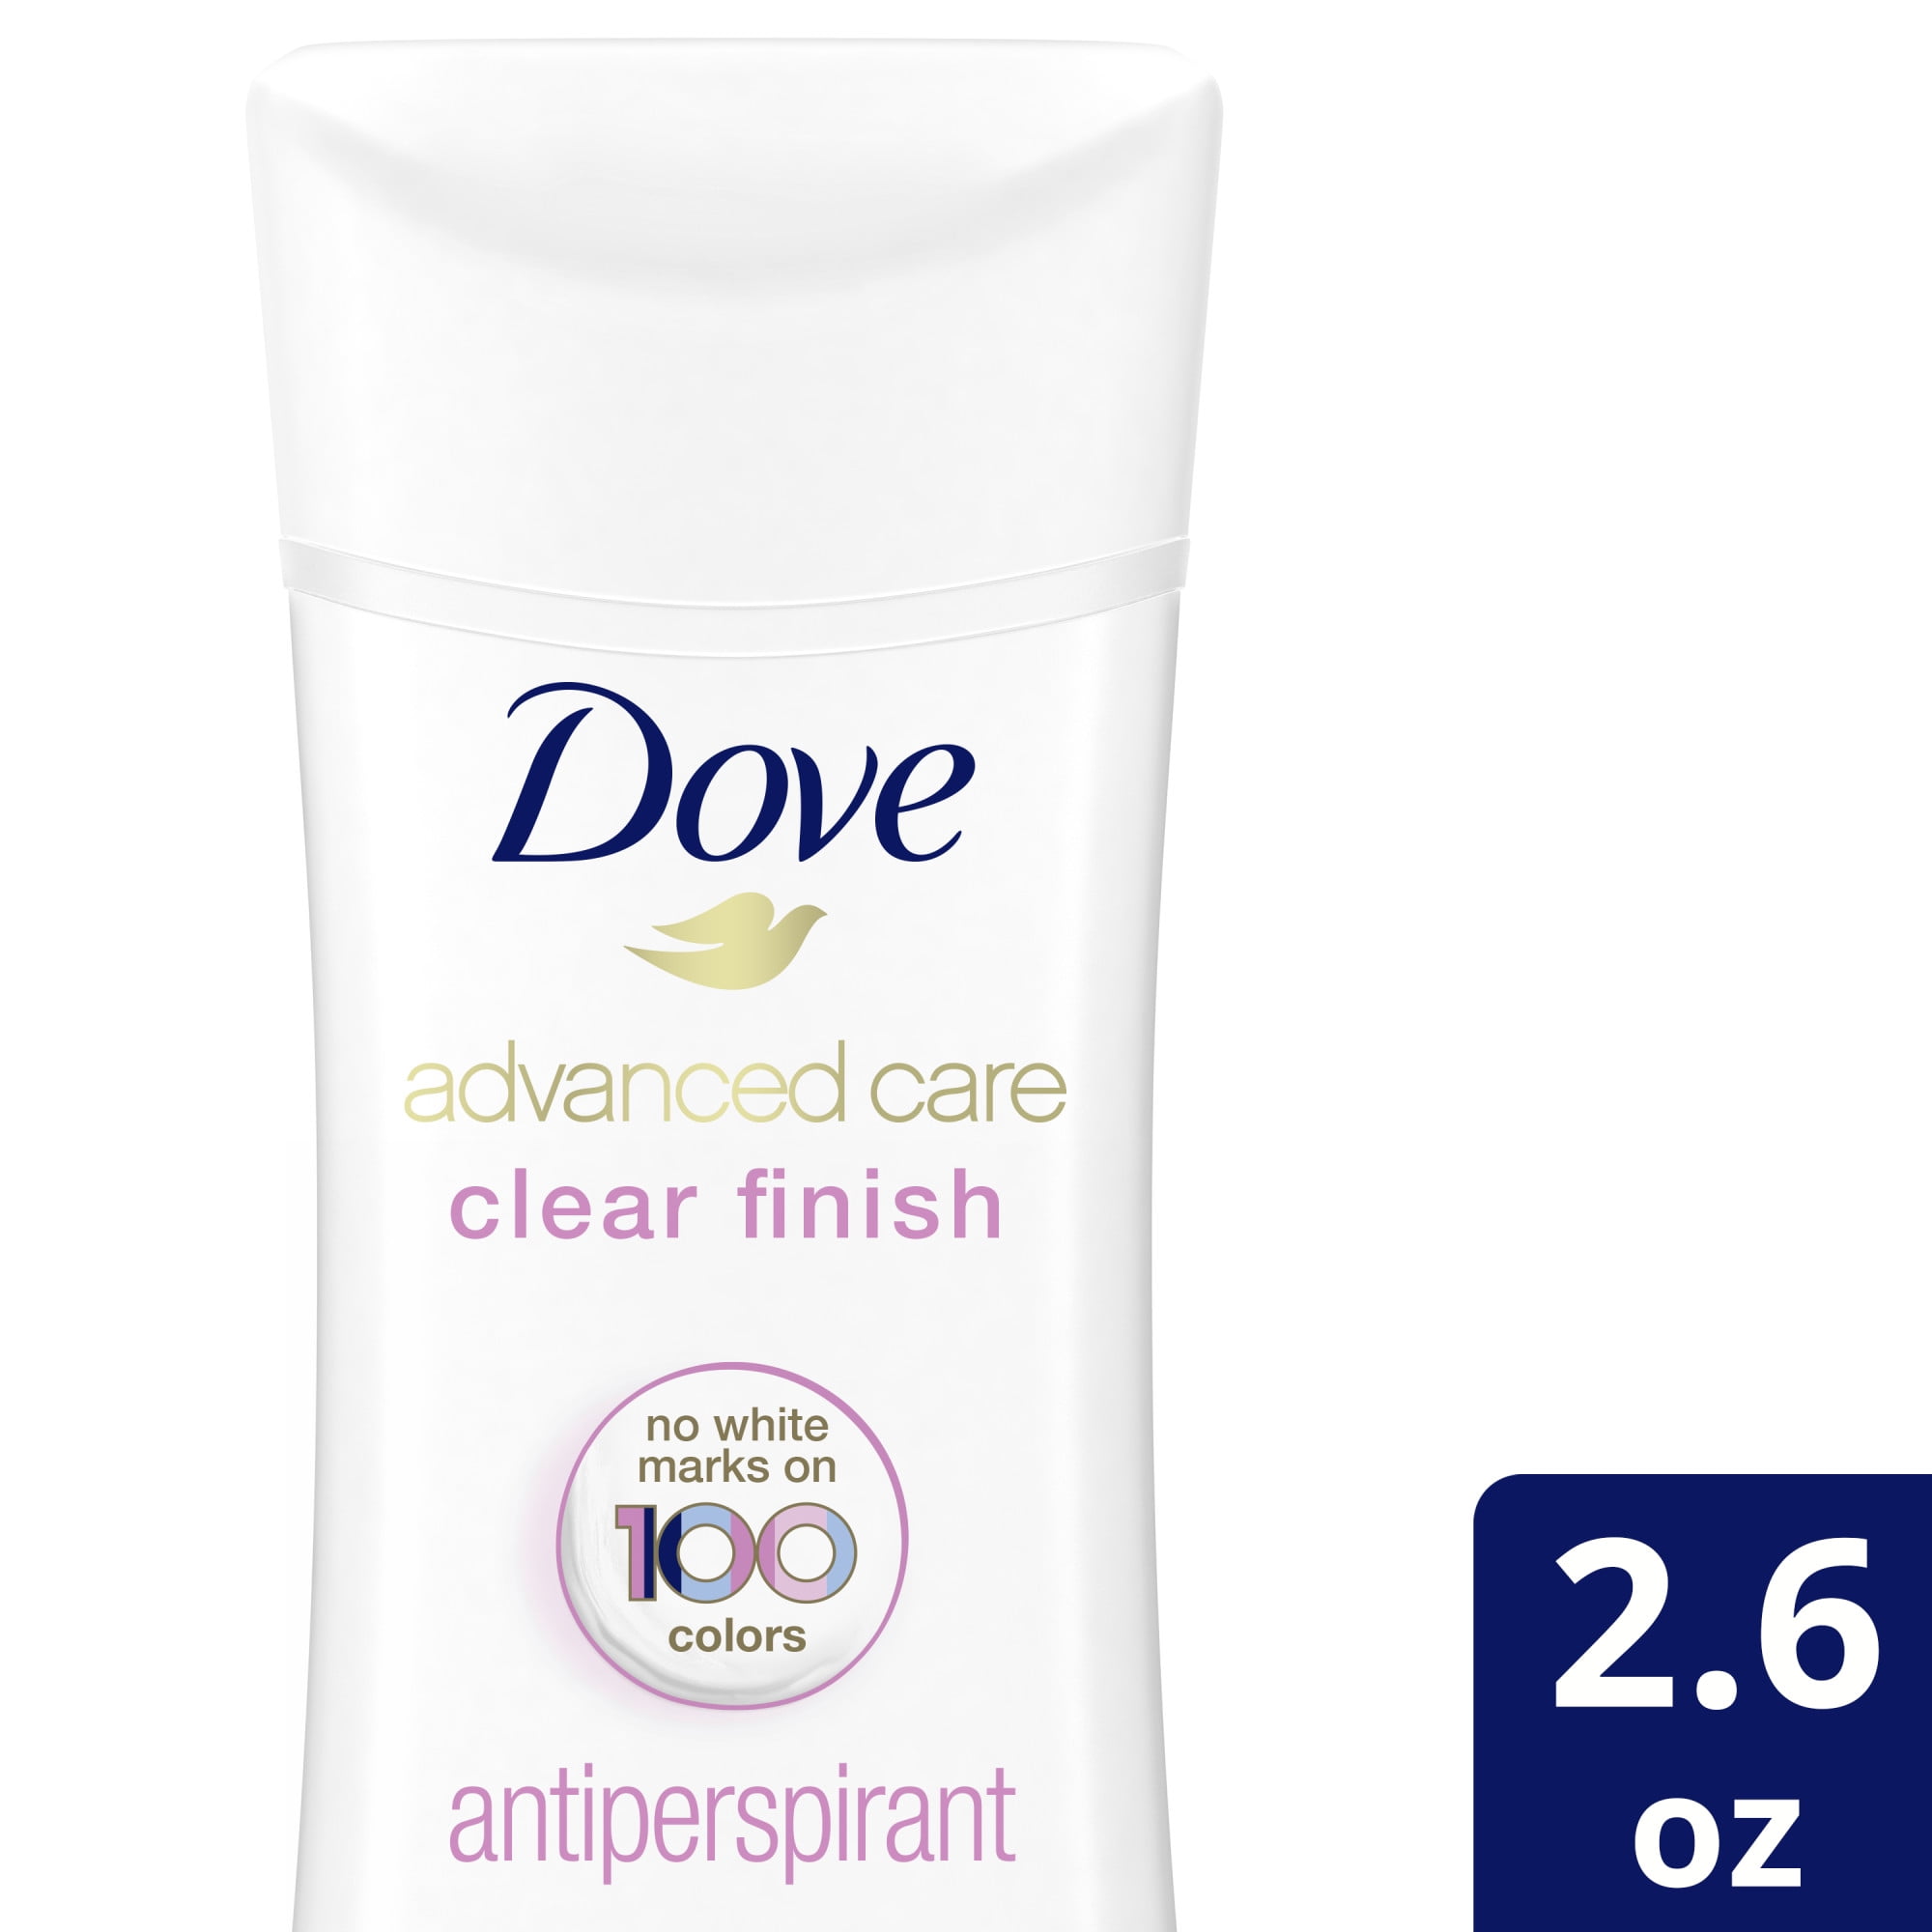 Dove Advanced Care Invisible Finish 48h Antiperspirant Deodorant, 2.6 Each Walmart.com